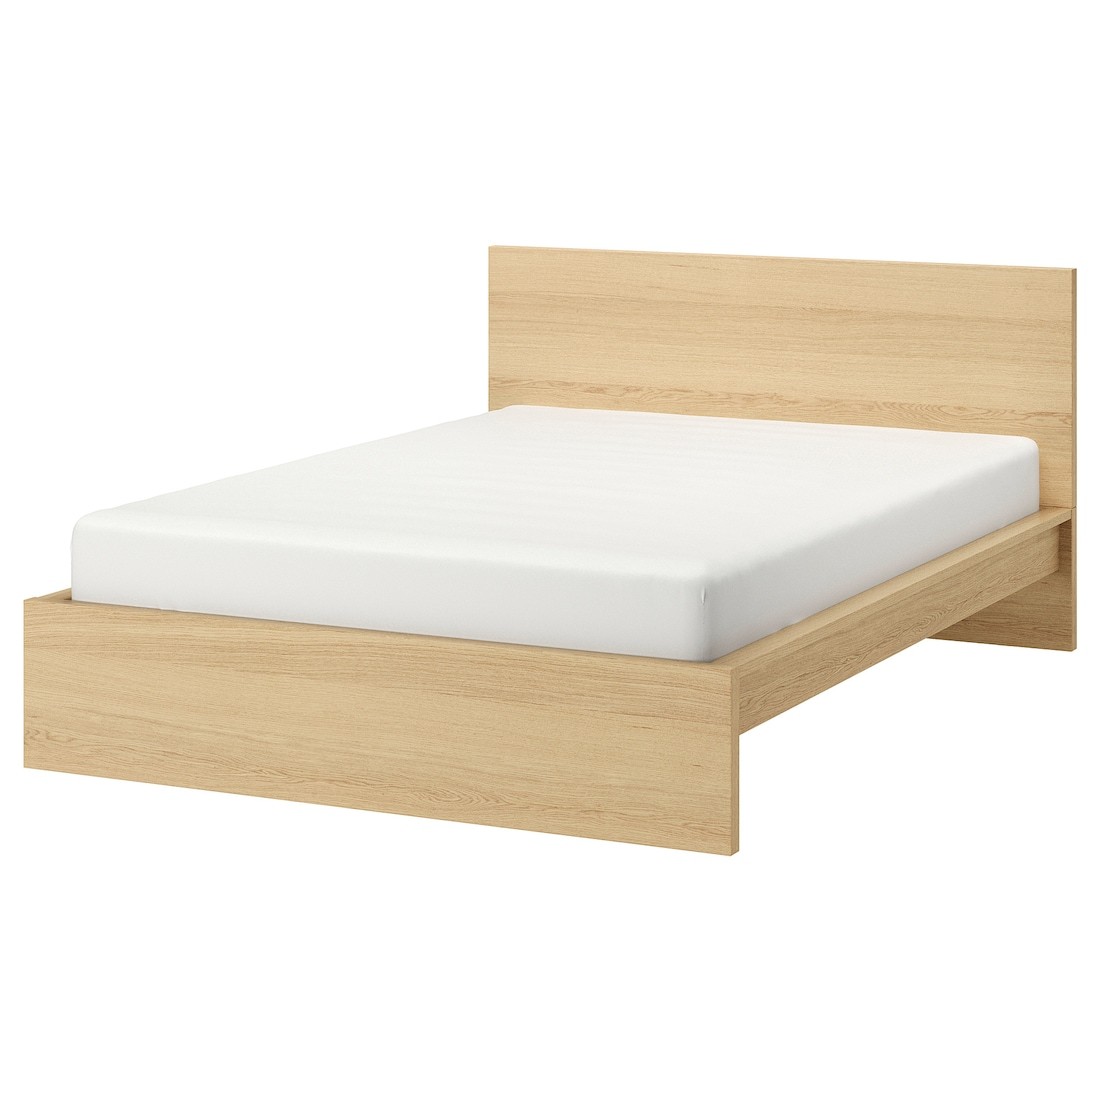 IKEA MALM МАЛЬМ Ліжко двоспальне, високе, шпон дуба білений, 140x200 см 59022547 590.225.47